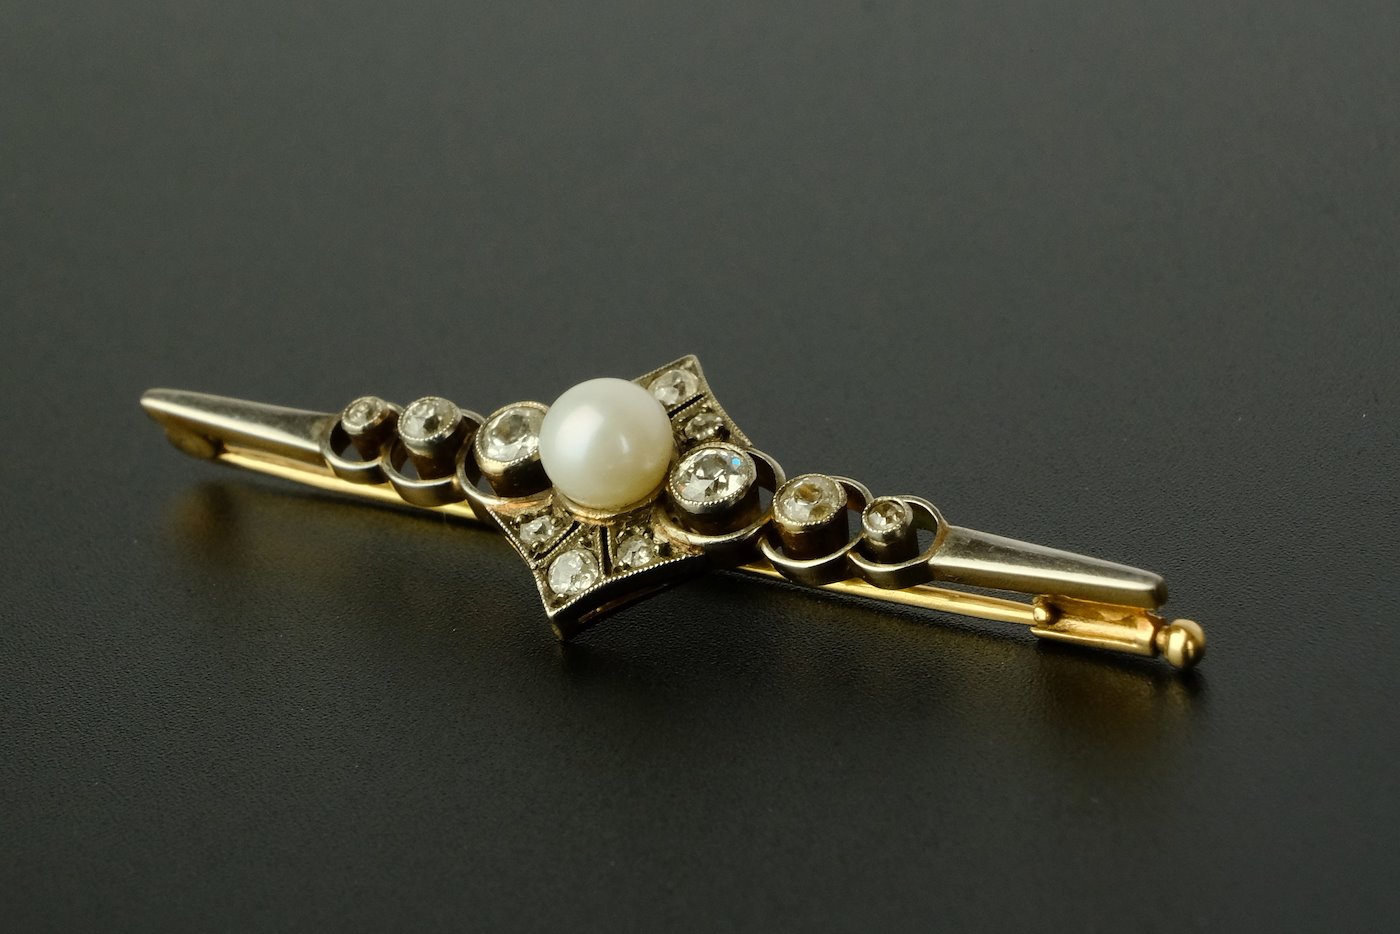 .. - Brož s perlou a brilianty, zlato 580/1000, hrubá hmotnost 4,53 g